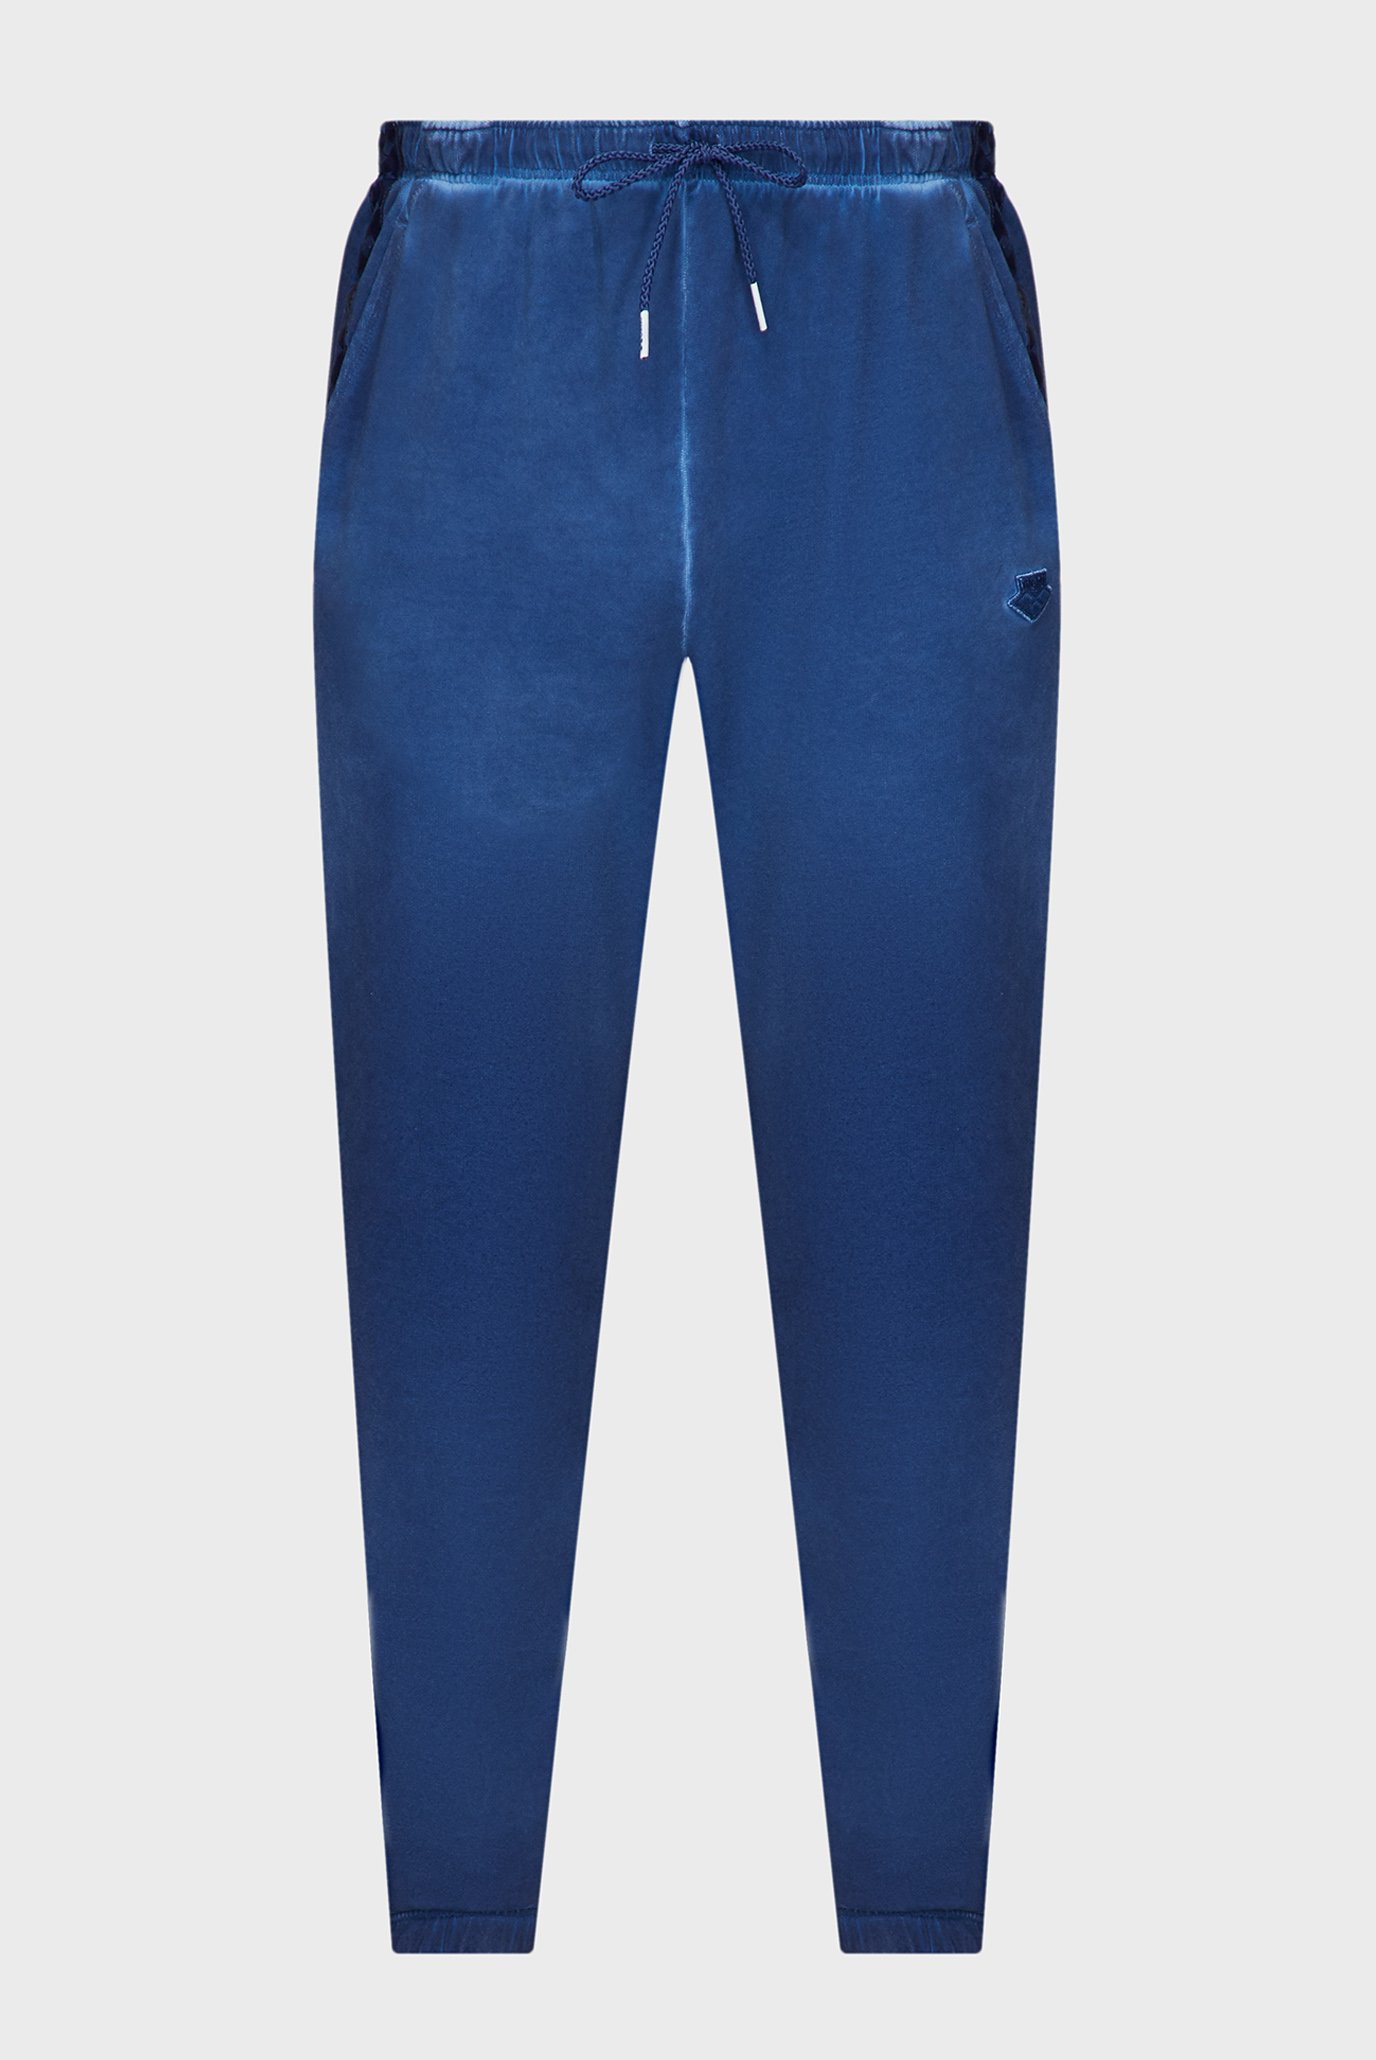 Синие спортивные брюки (унисекс) 1